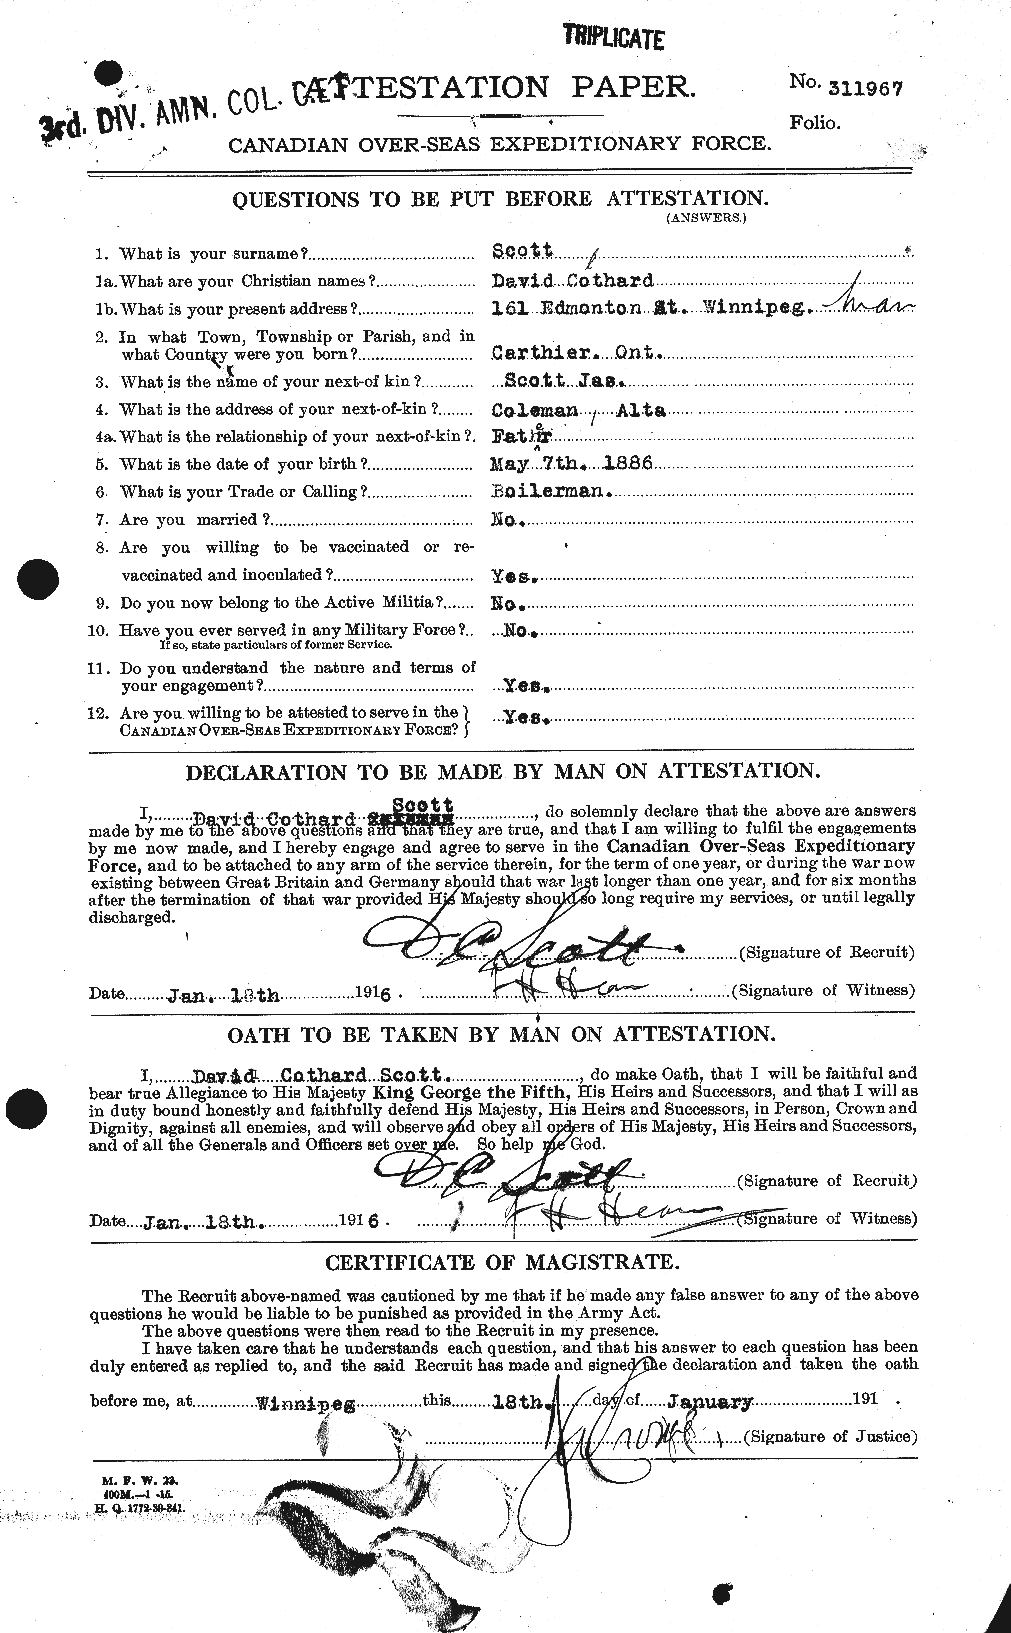 Dossiers du Personnel de la Première Guerre mondiale - CEC 085599a